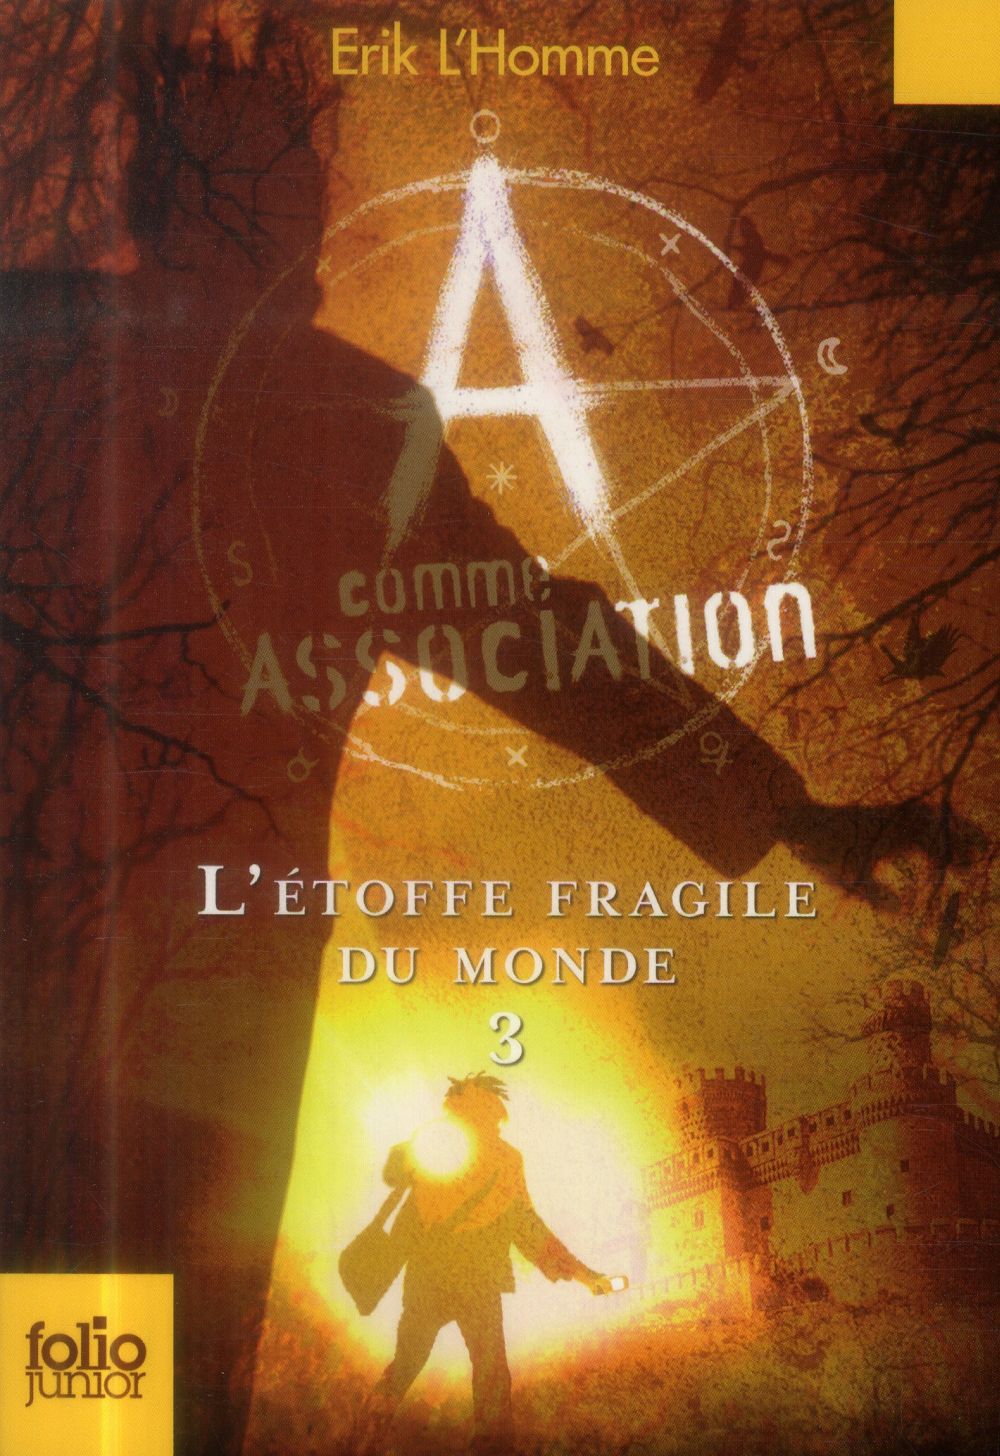 A COMME ASSOCIATION, 3 : L'ETOFFE FRAGILE DU MONDE